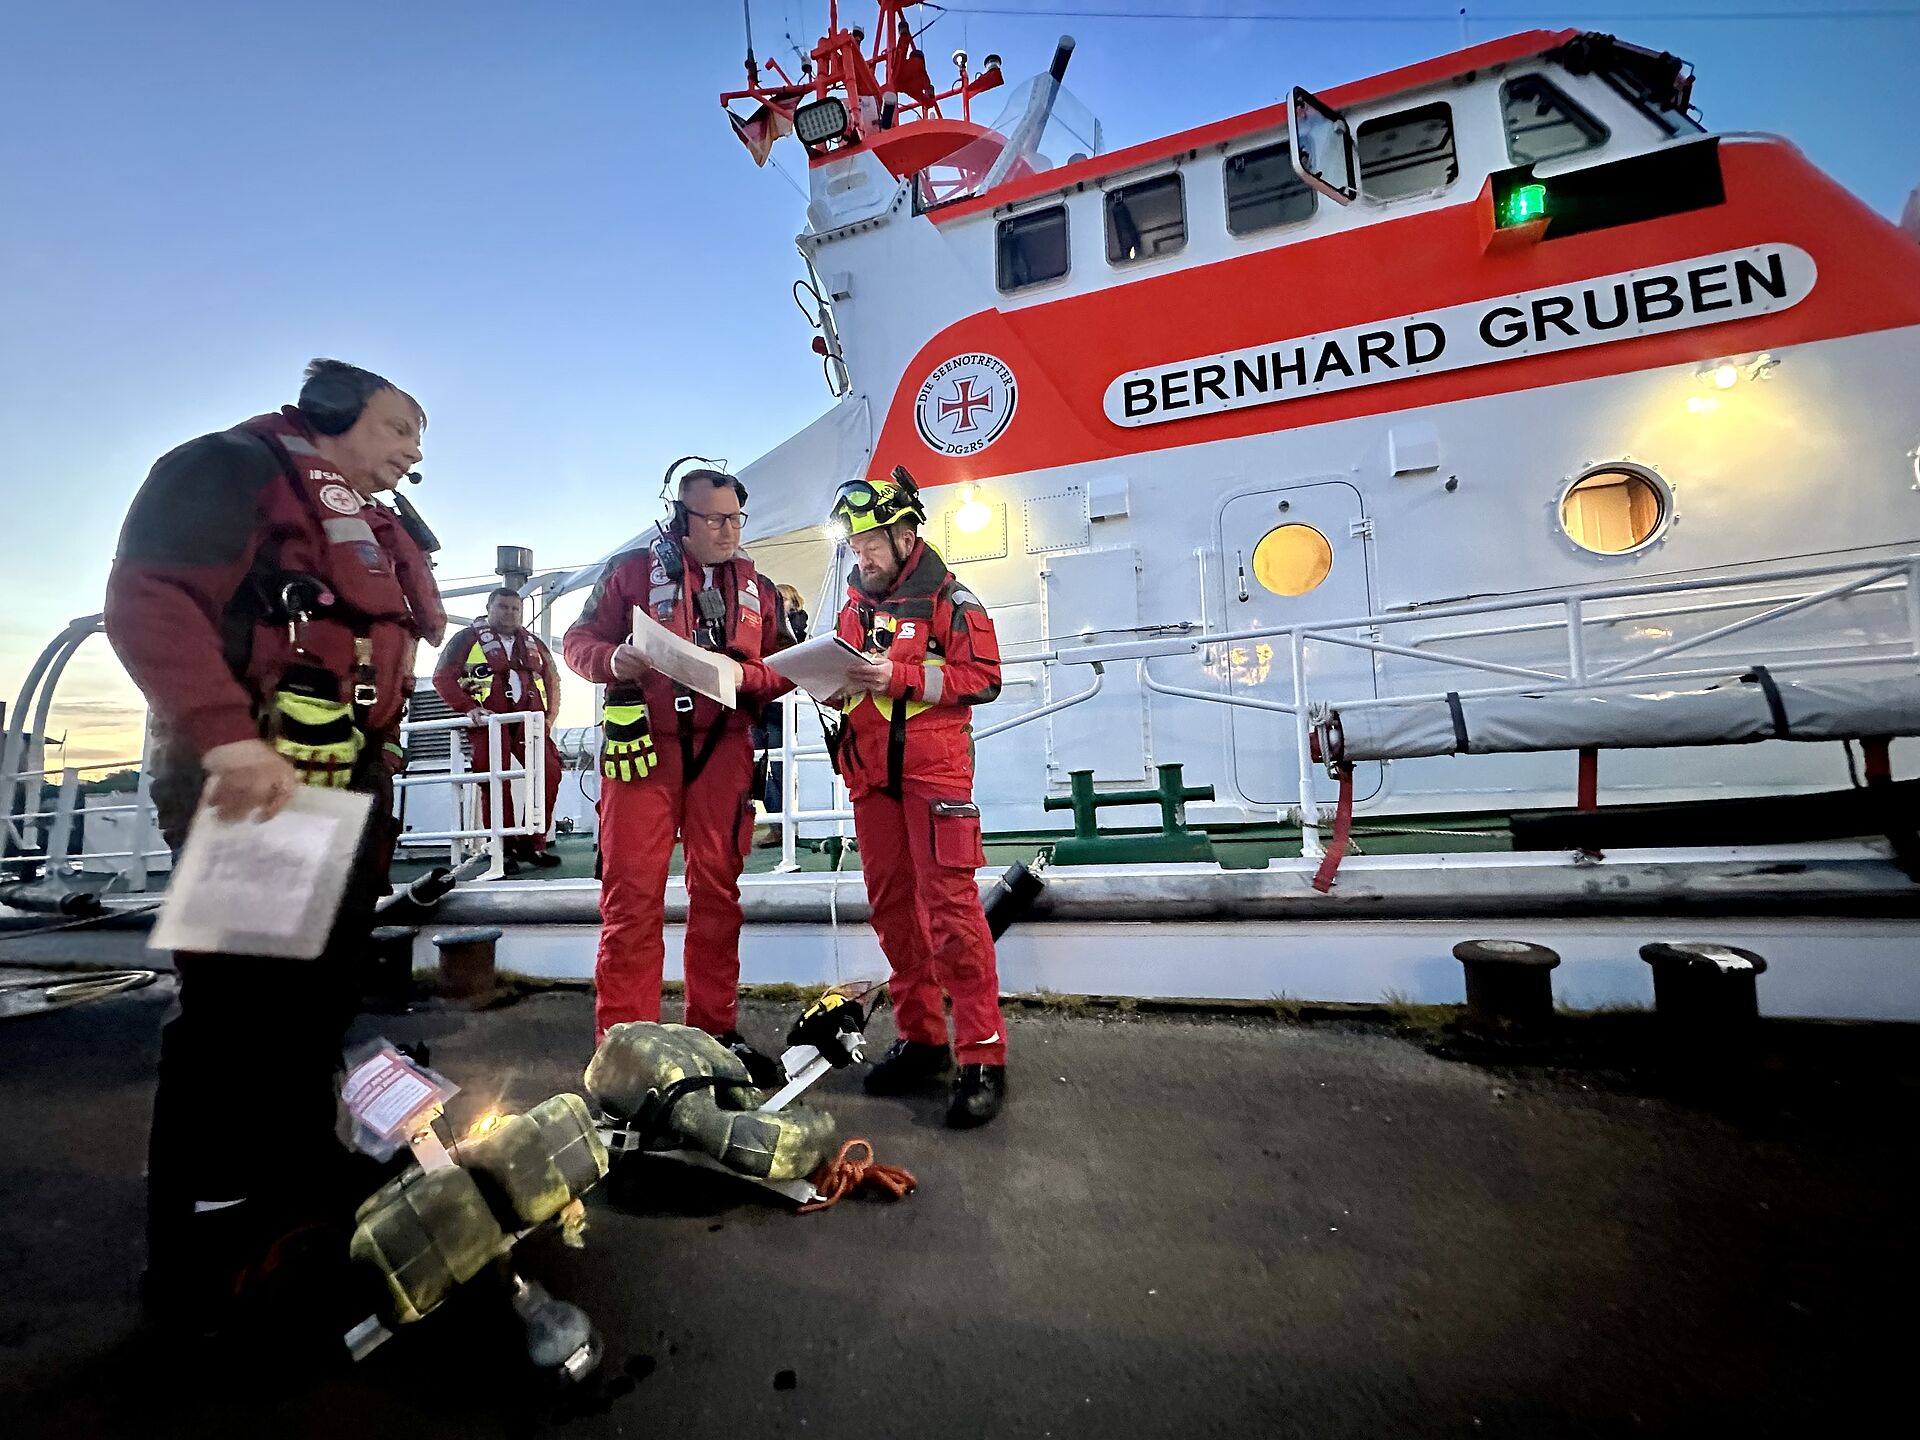 Die Crew der BERNHARD GRUBEN/Station Hooksiel hat zwei Dummys geborgen. Auch ihre angenommenen Verletzungen müssen dem Rettungsdienst an Land zur weiteren Versorgung übergeben werden.